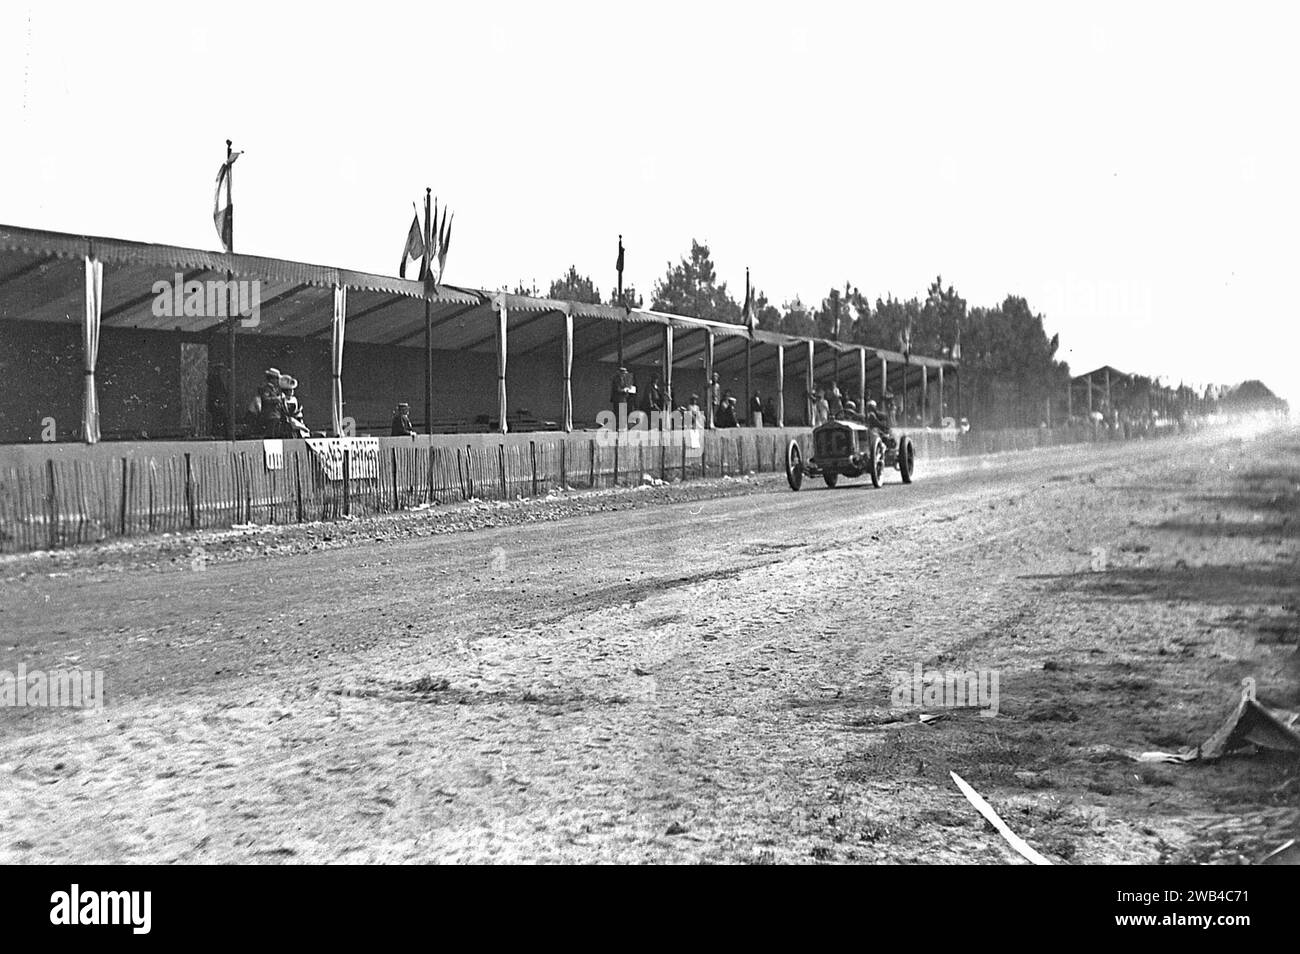 Prima edizione della 24 ore di le Mans endurance sport car race (24 heures du Mans). 26 e 27 giugno 1906. La Lorraine-Dietrich guidata da Arthur Duray. Foto di Jean de Biré Foto Stock